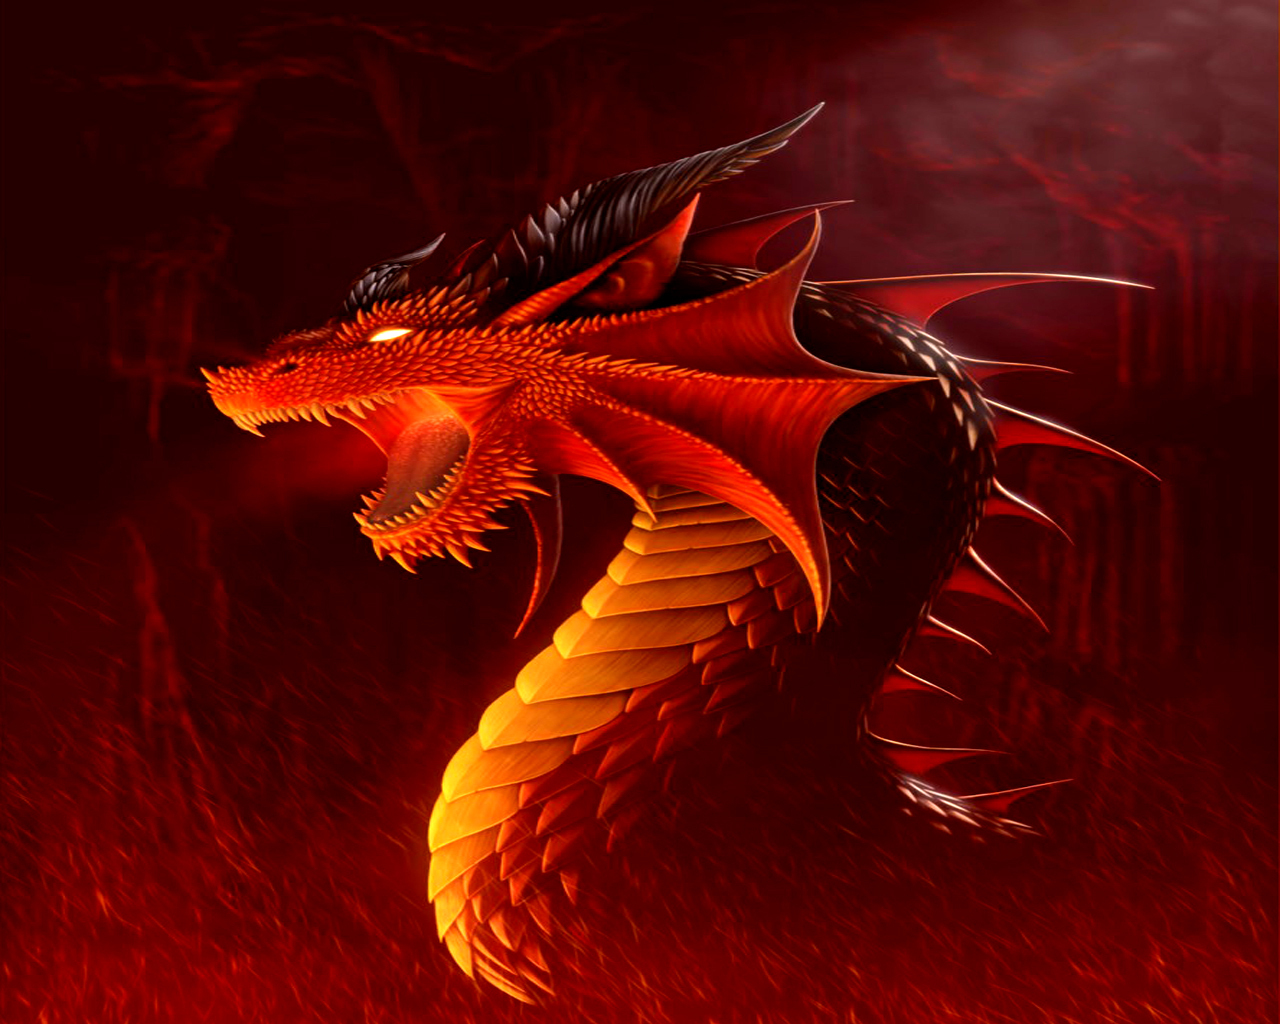 fond d'écran dragon hd,dragon,rouge,personnage fictif,oeuvre de cg,créature mythique